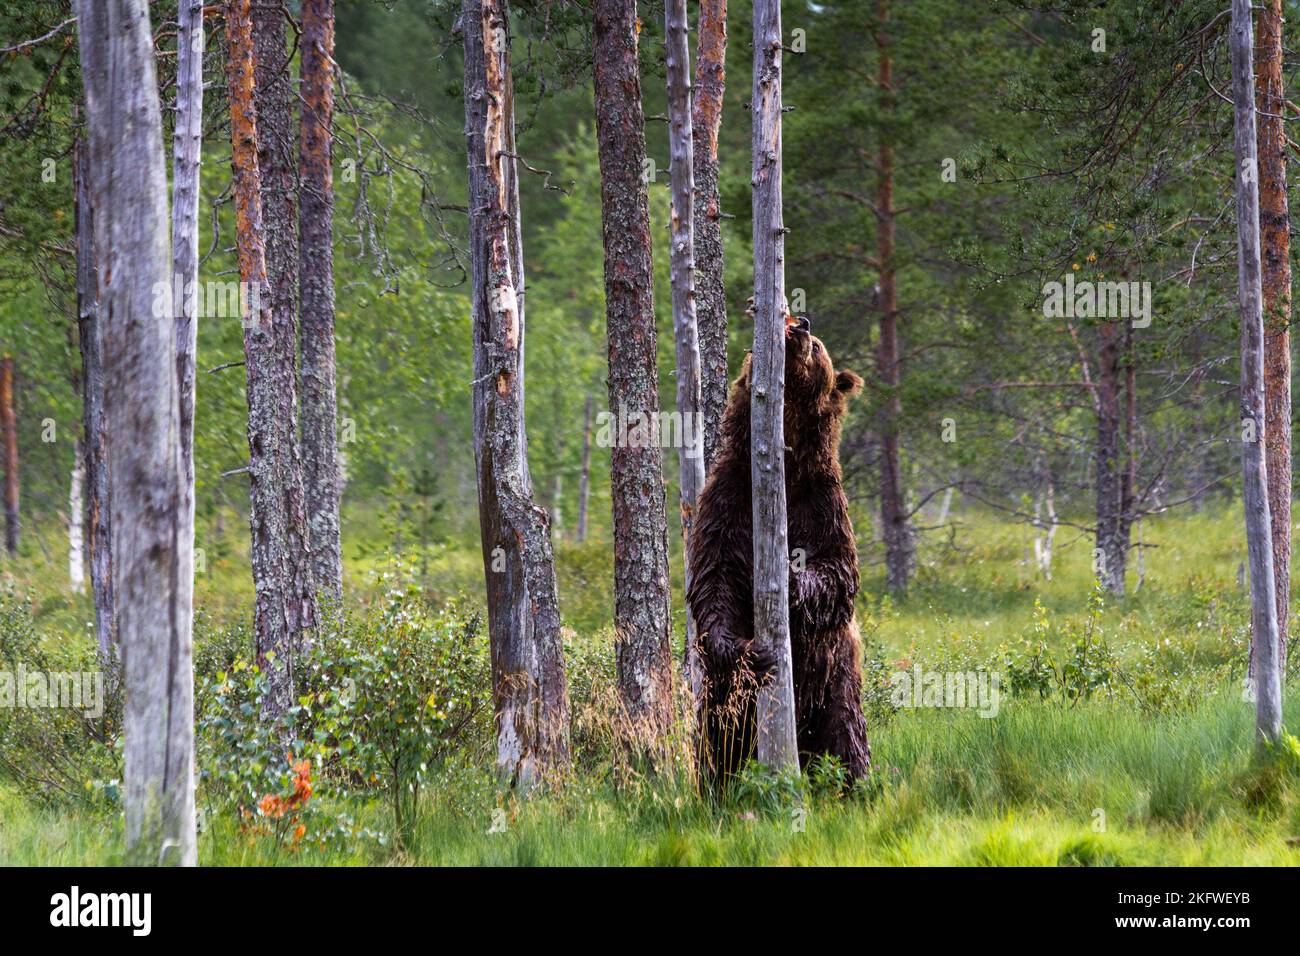 Ein erwachsener Braunbär, der auf seinen Füßen steht und einen Baum hält, auf der Suche nach Nahrung Stockfoto